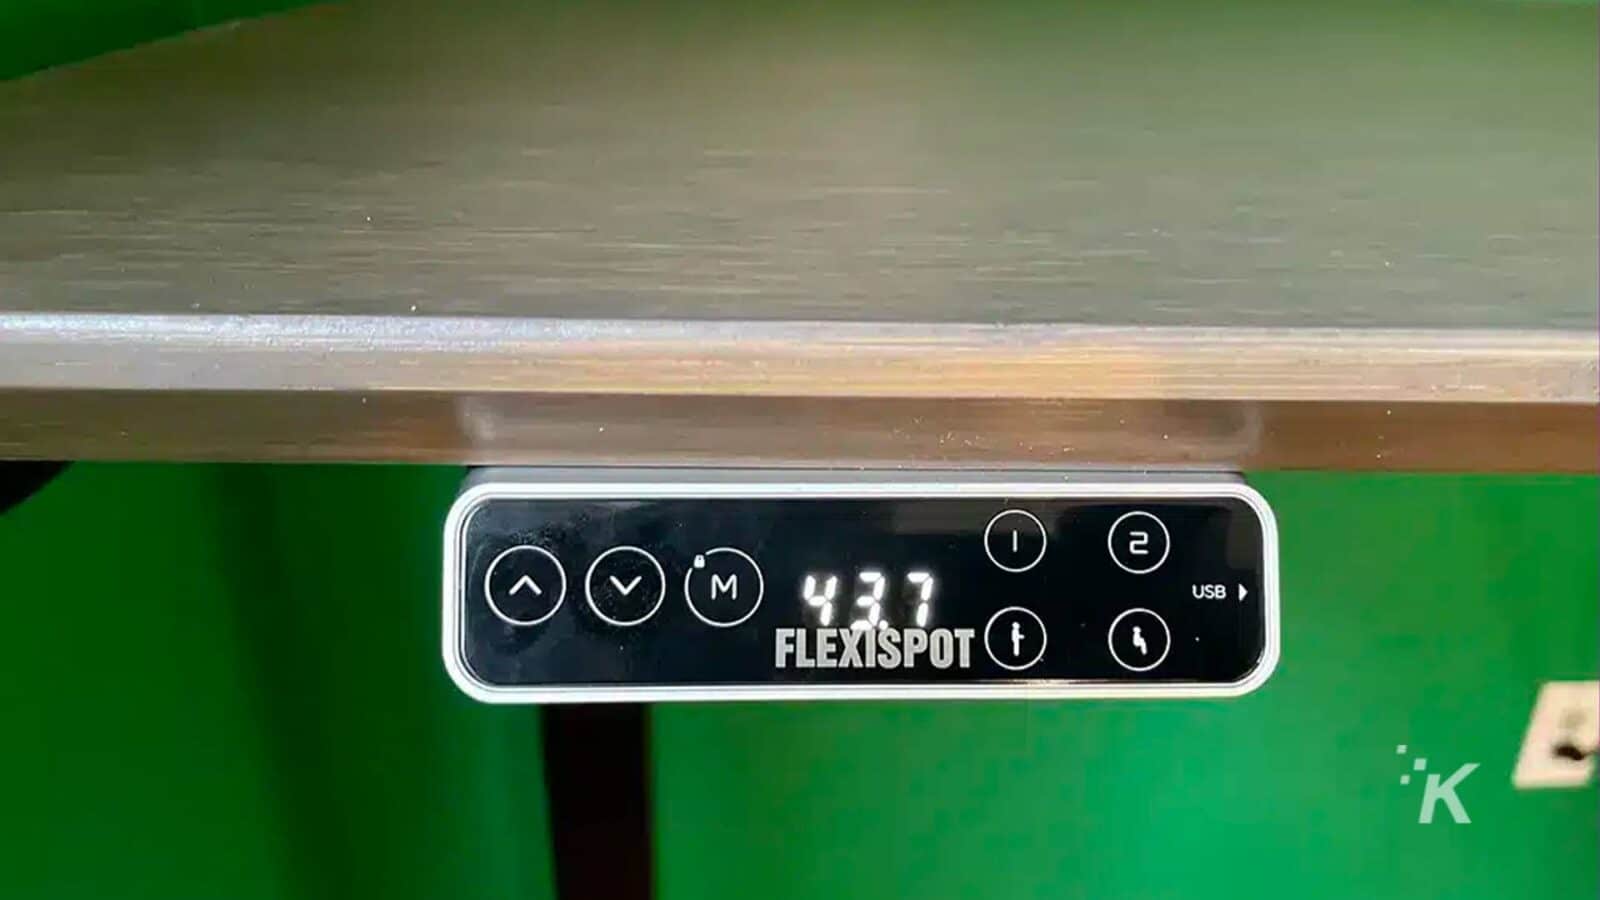 Das Bild zeigt ein USB-Kabel, das an ein FlexiSpot-Gerät angeschlossen wird. Volltext: - VM) 437 2 1 USB von FLEXISPOT K